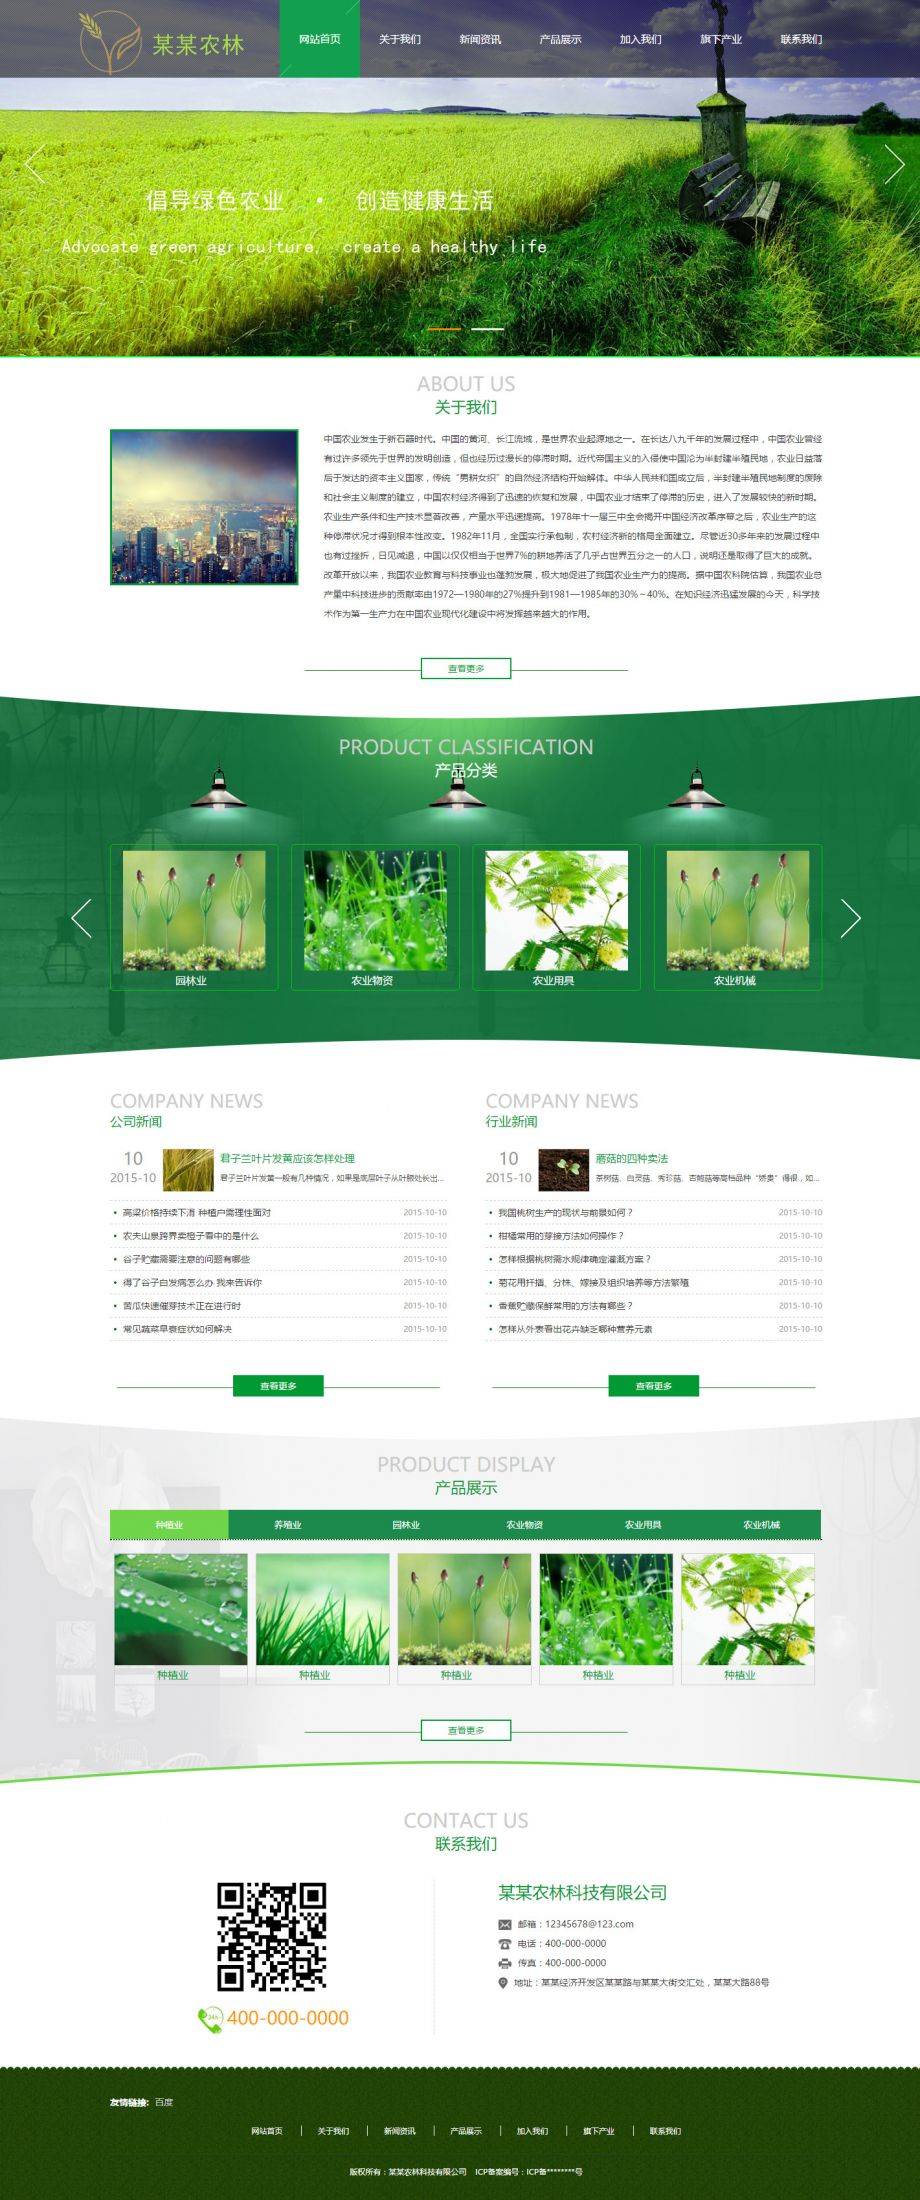 中文模板大气宽屏农林行业DIV CSS企业网站模板